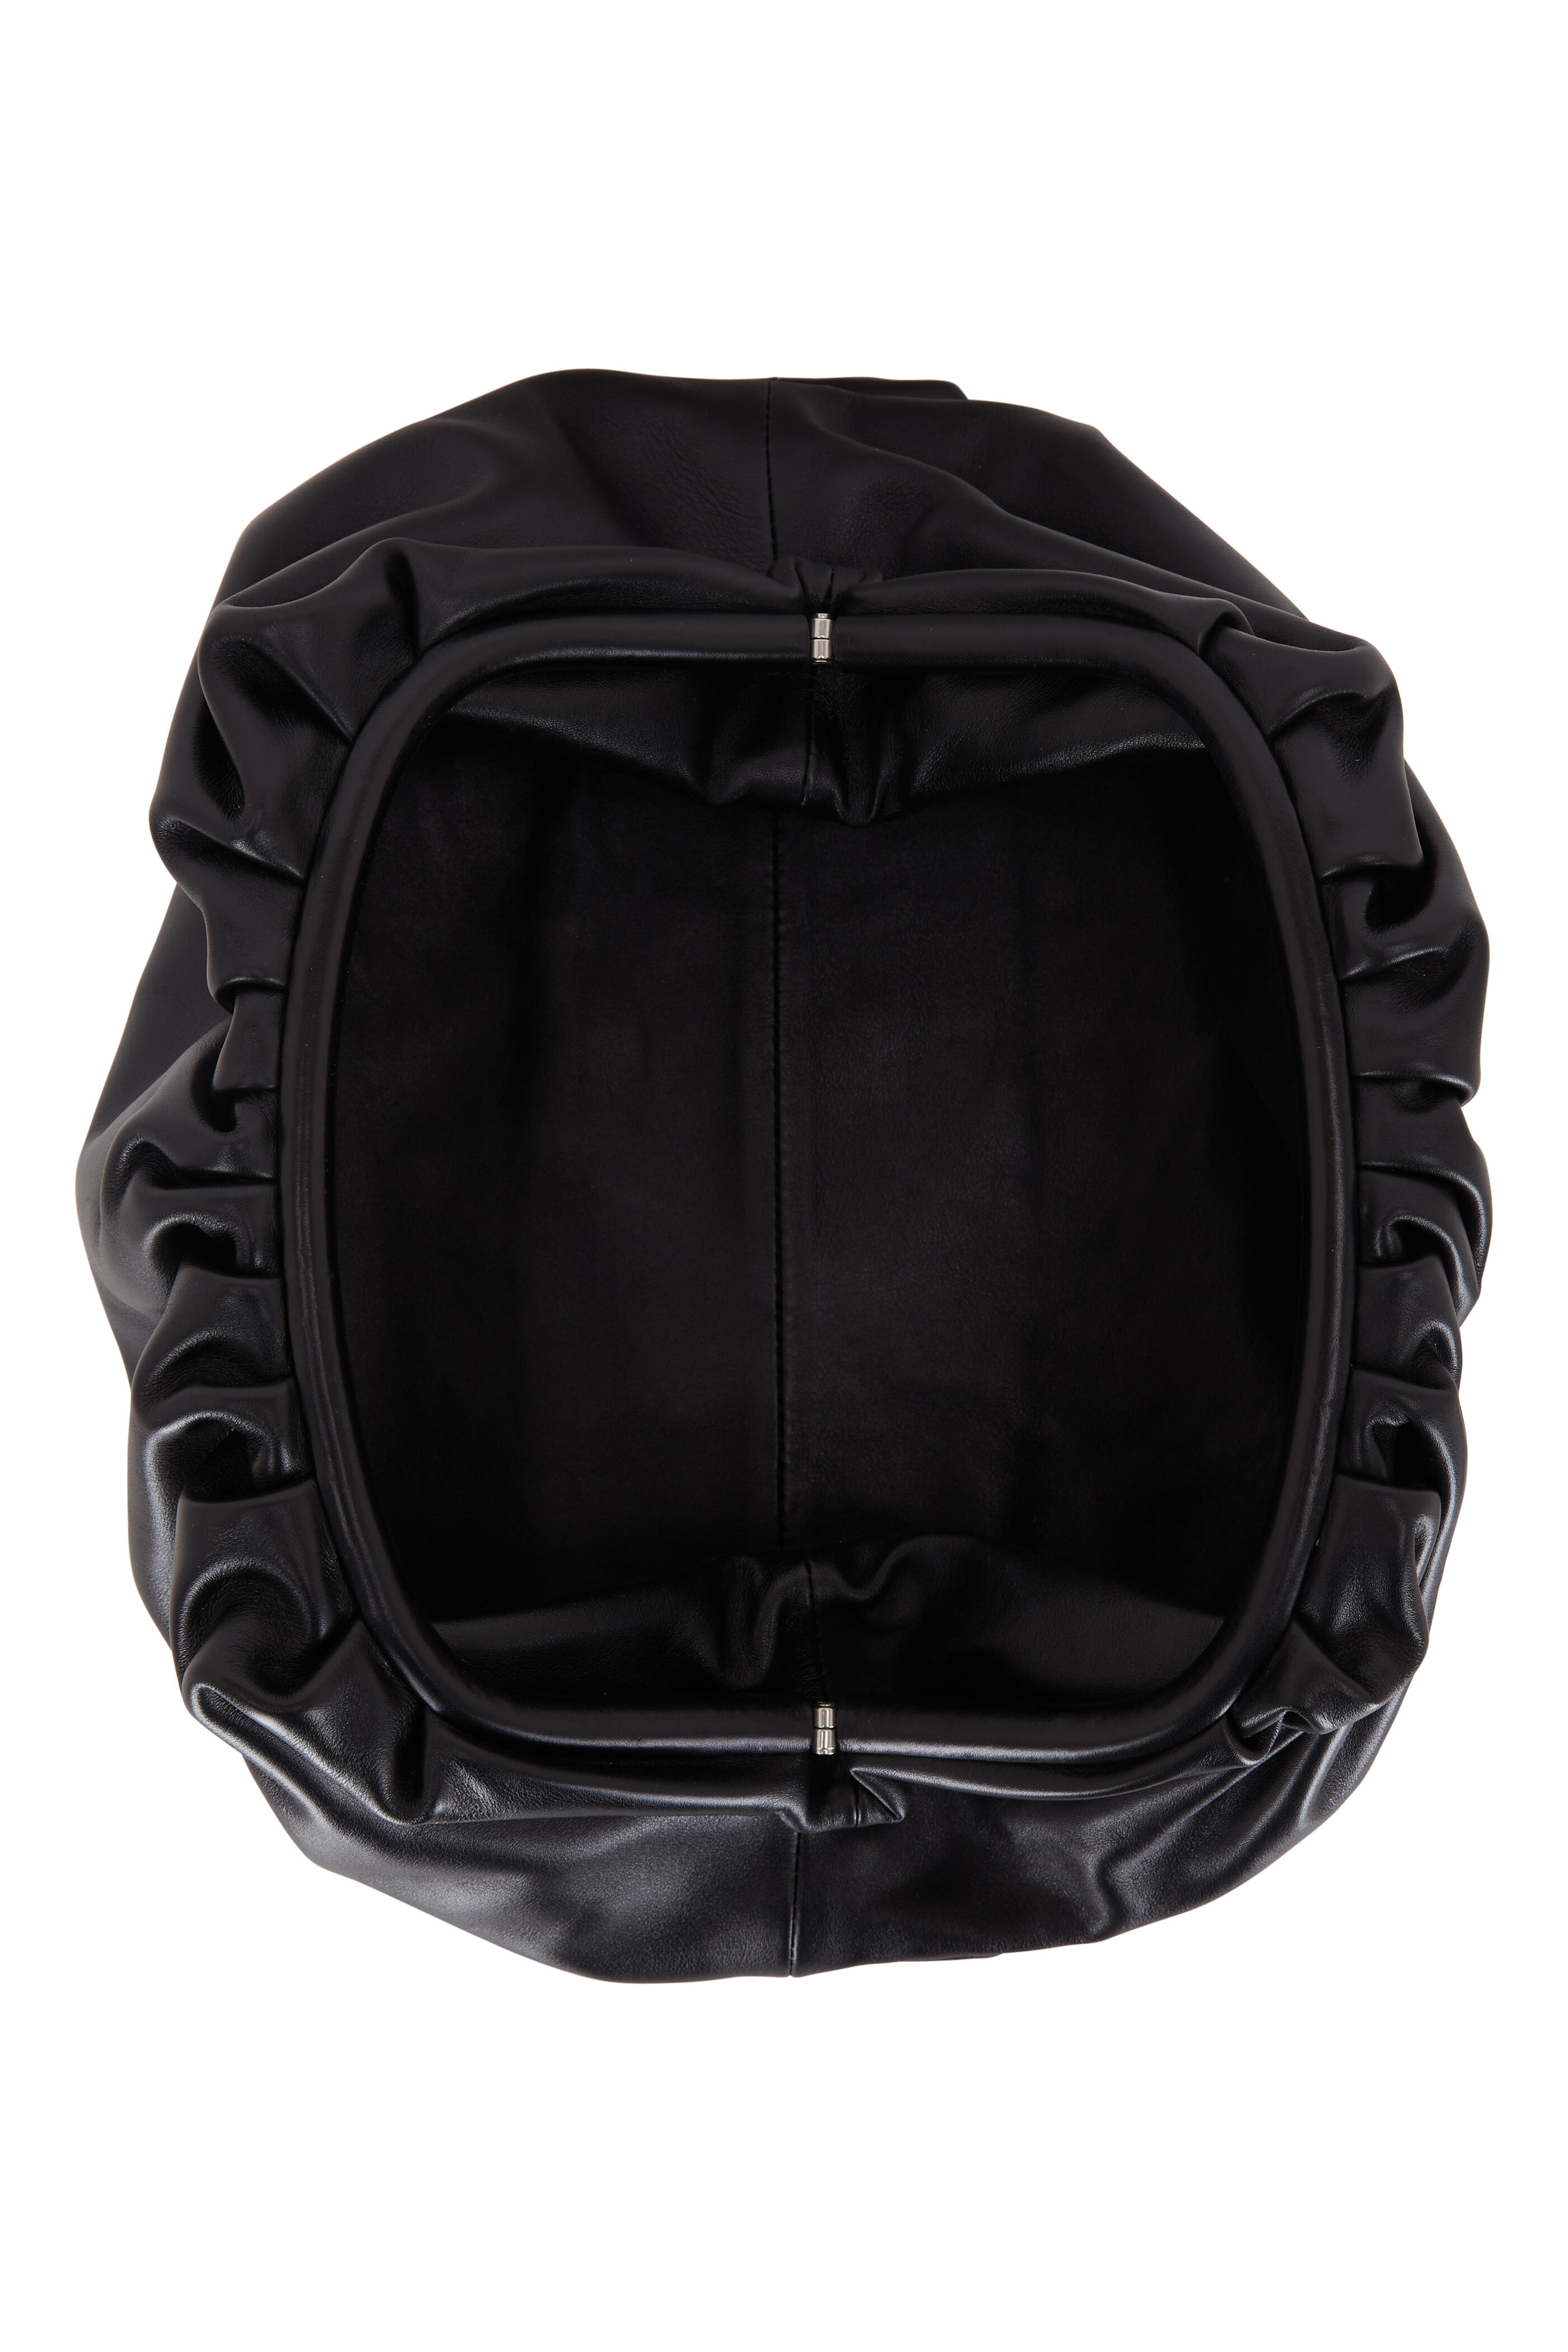 Gold Cloud Clutch Bag / Woven Pouch / Designer Handbag / 